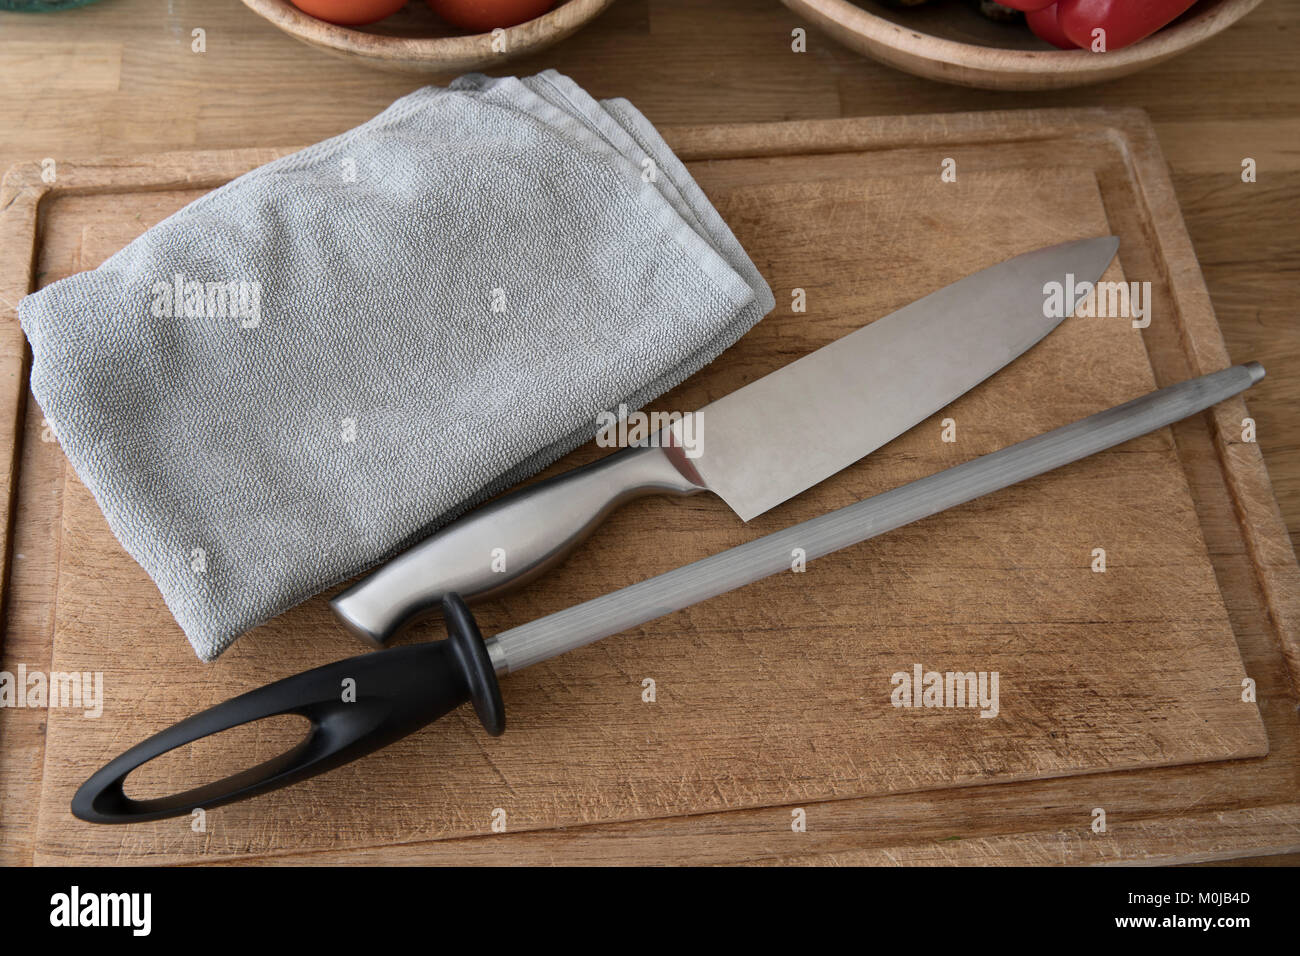 Kochmesser, Honen Stahl- und Handtuch auf ein Schneidbrett, Vorbereitung für die Messer schärfen. Stockfoto